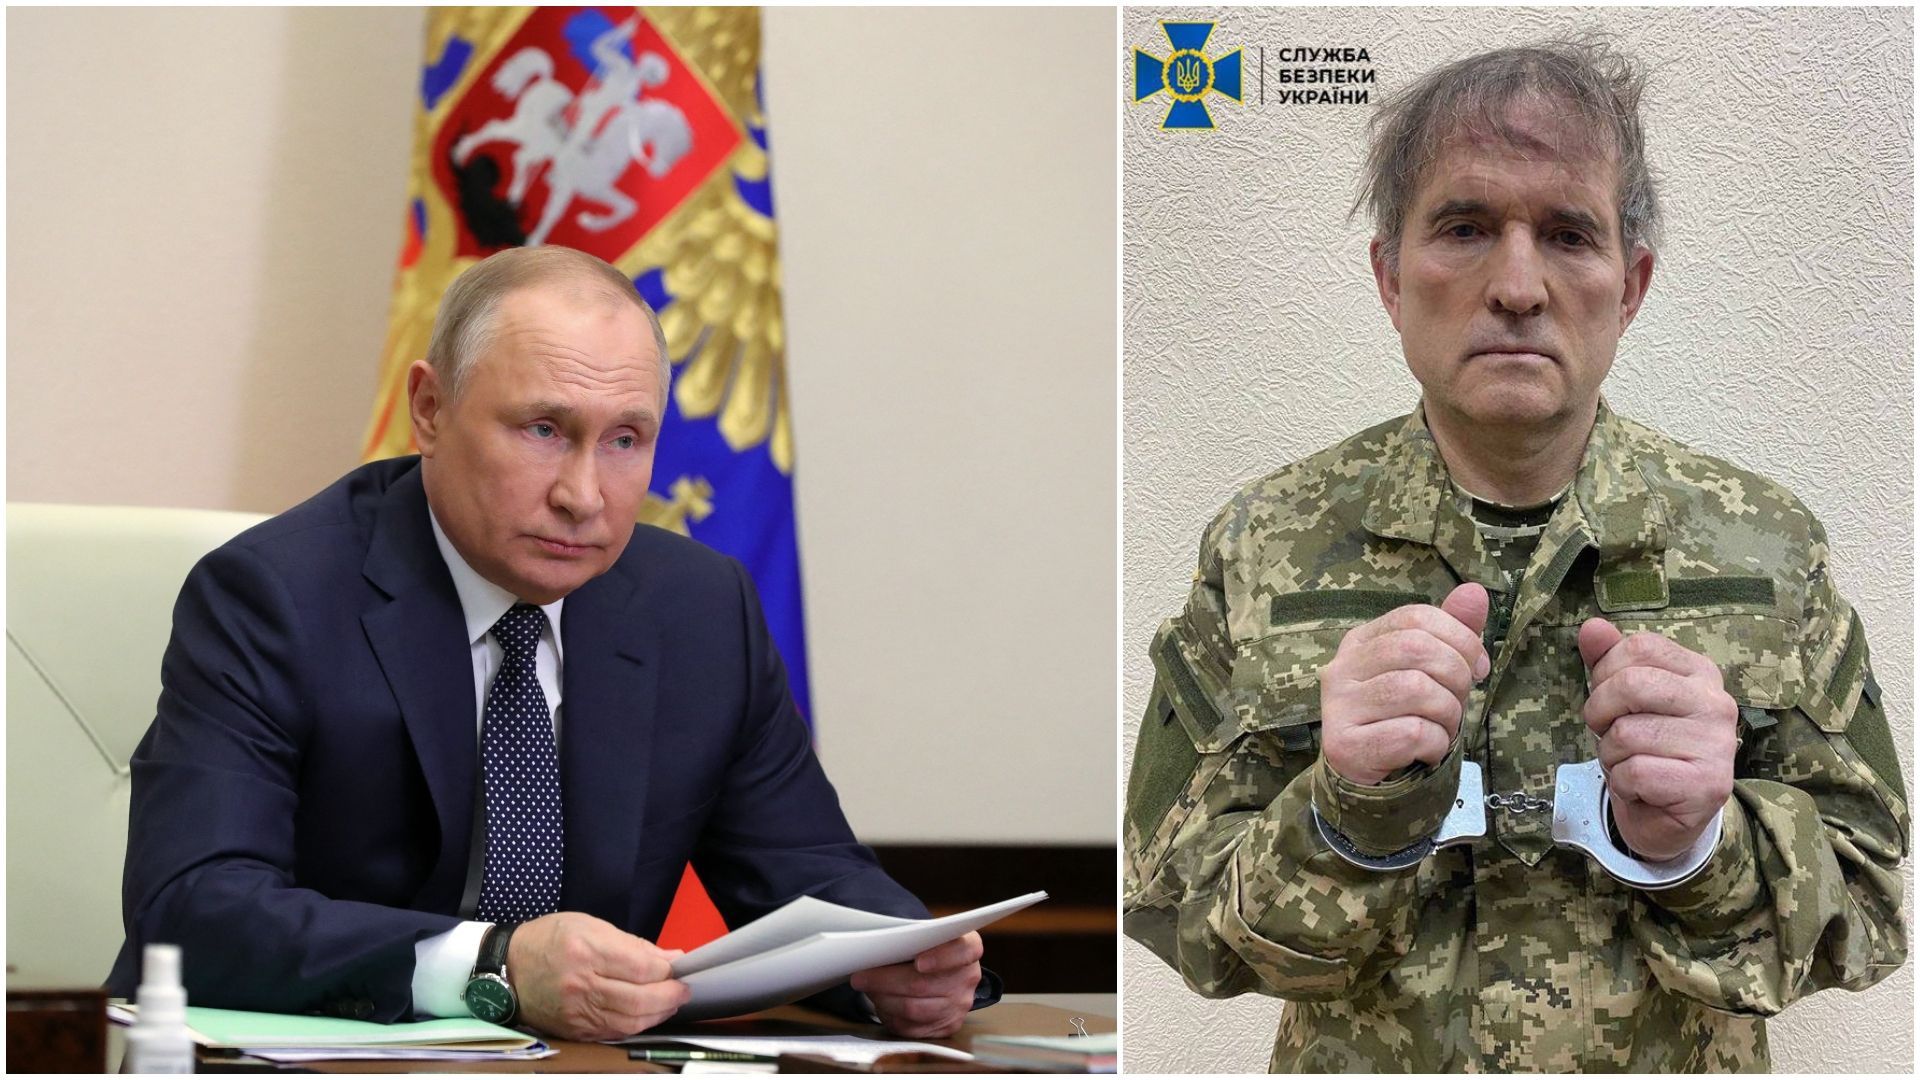 Le président russe Vladimir Poutine (à gauche) et Viktor Medvedchuk (à droite) arrêté récemment en Ukraine. 